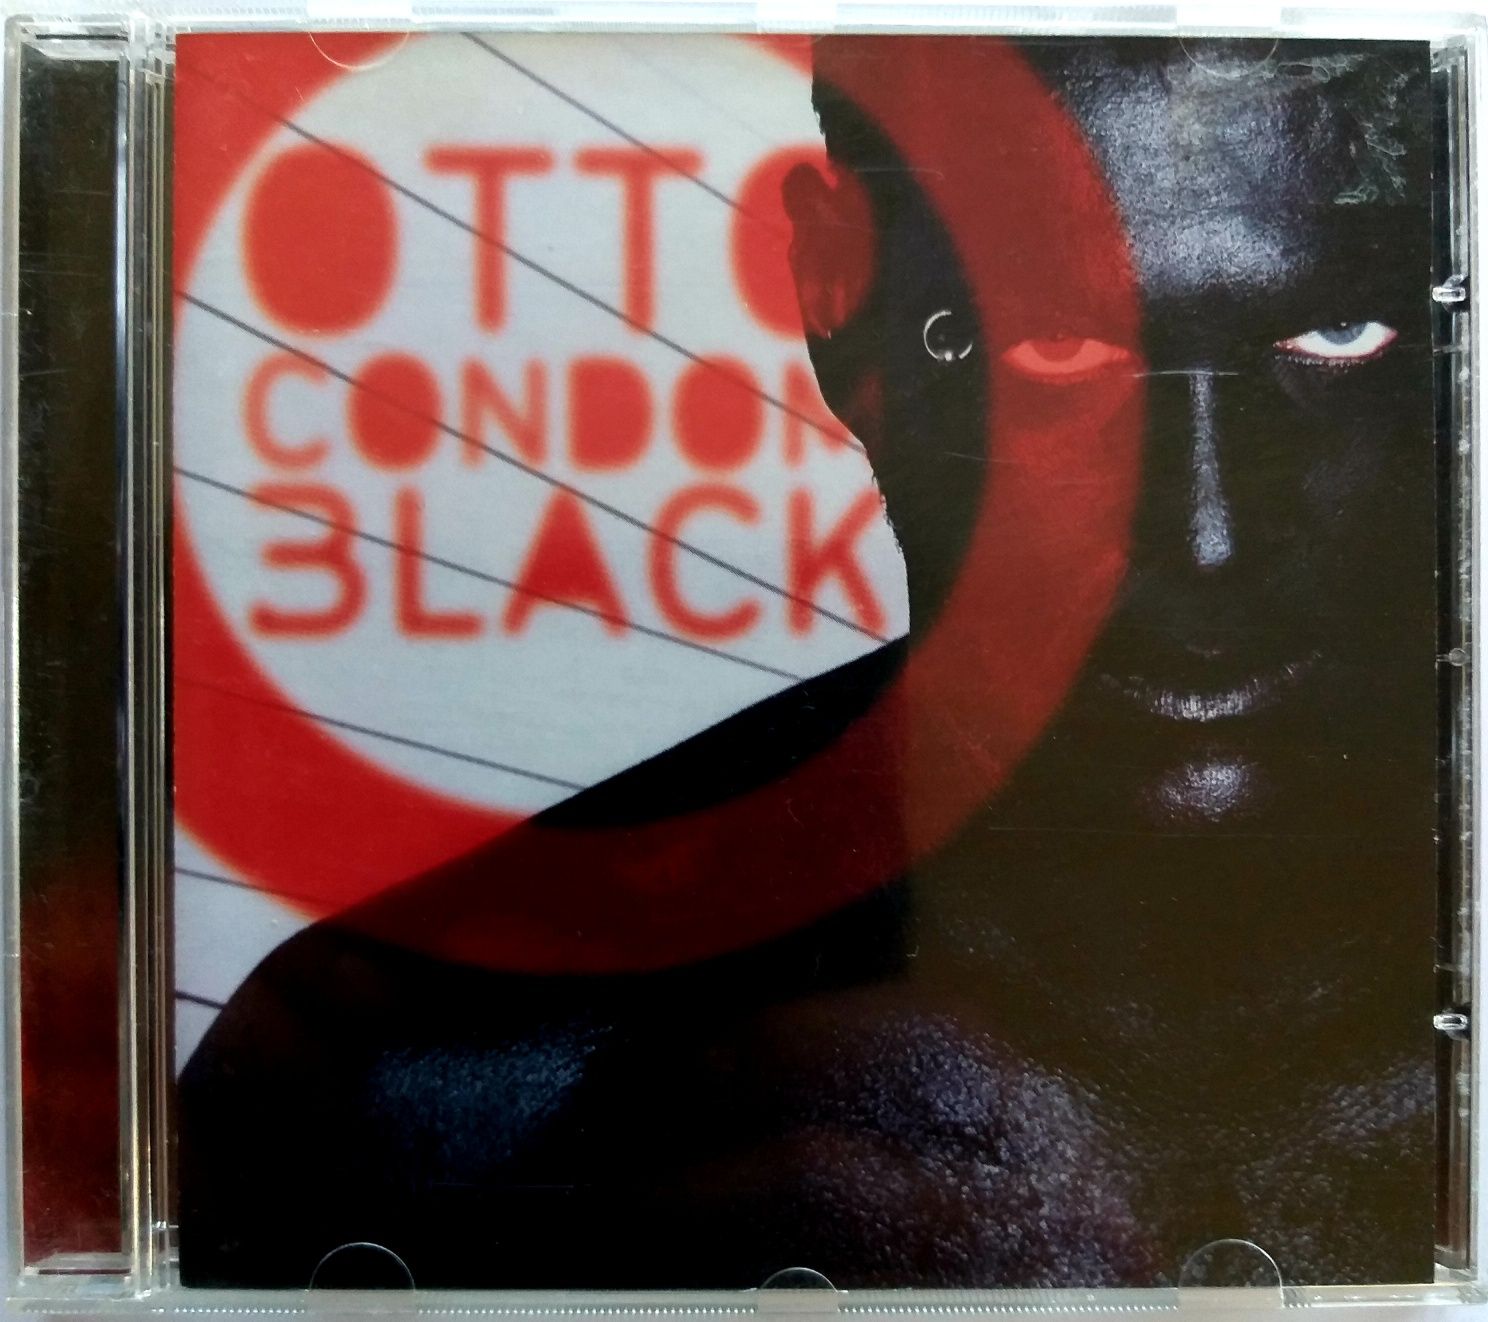 Otto Condom Black 2001r